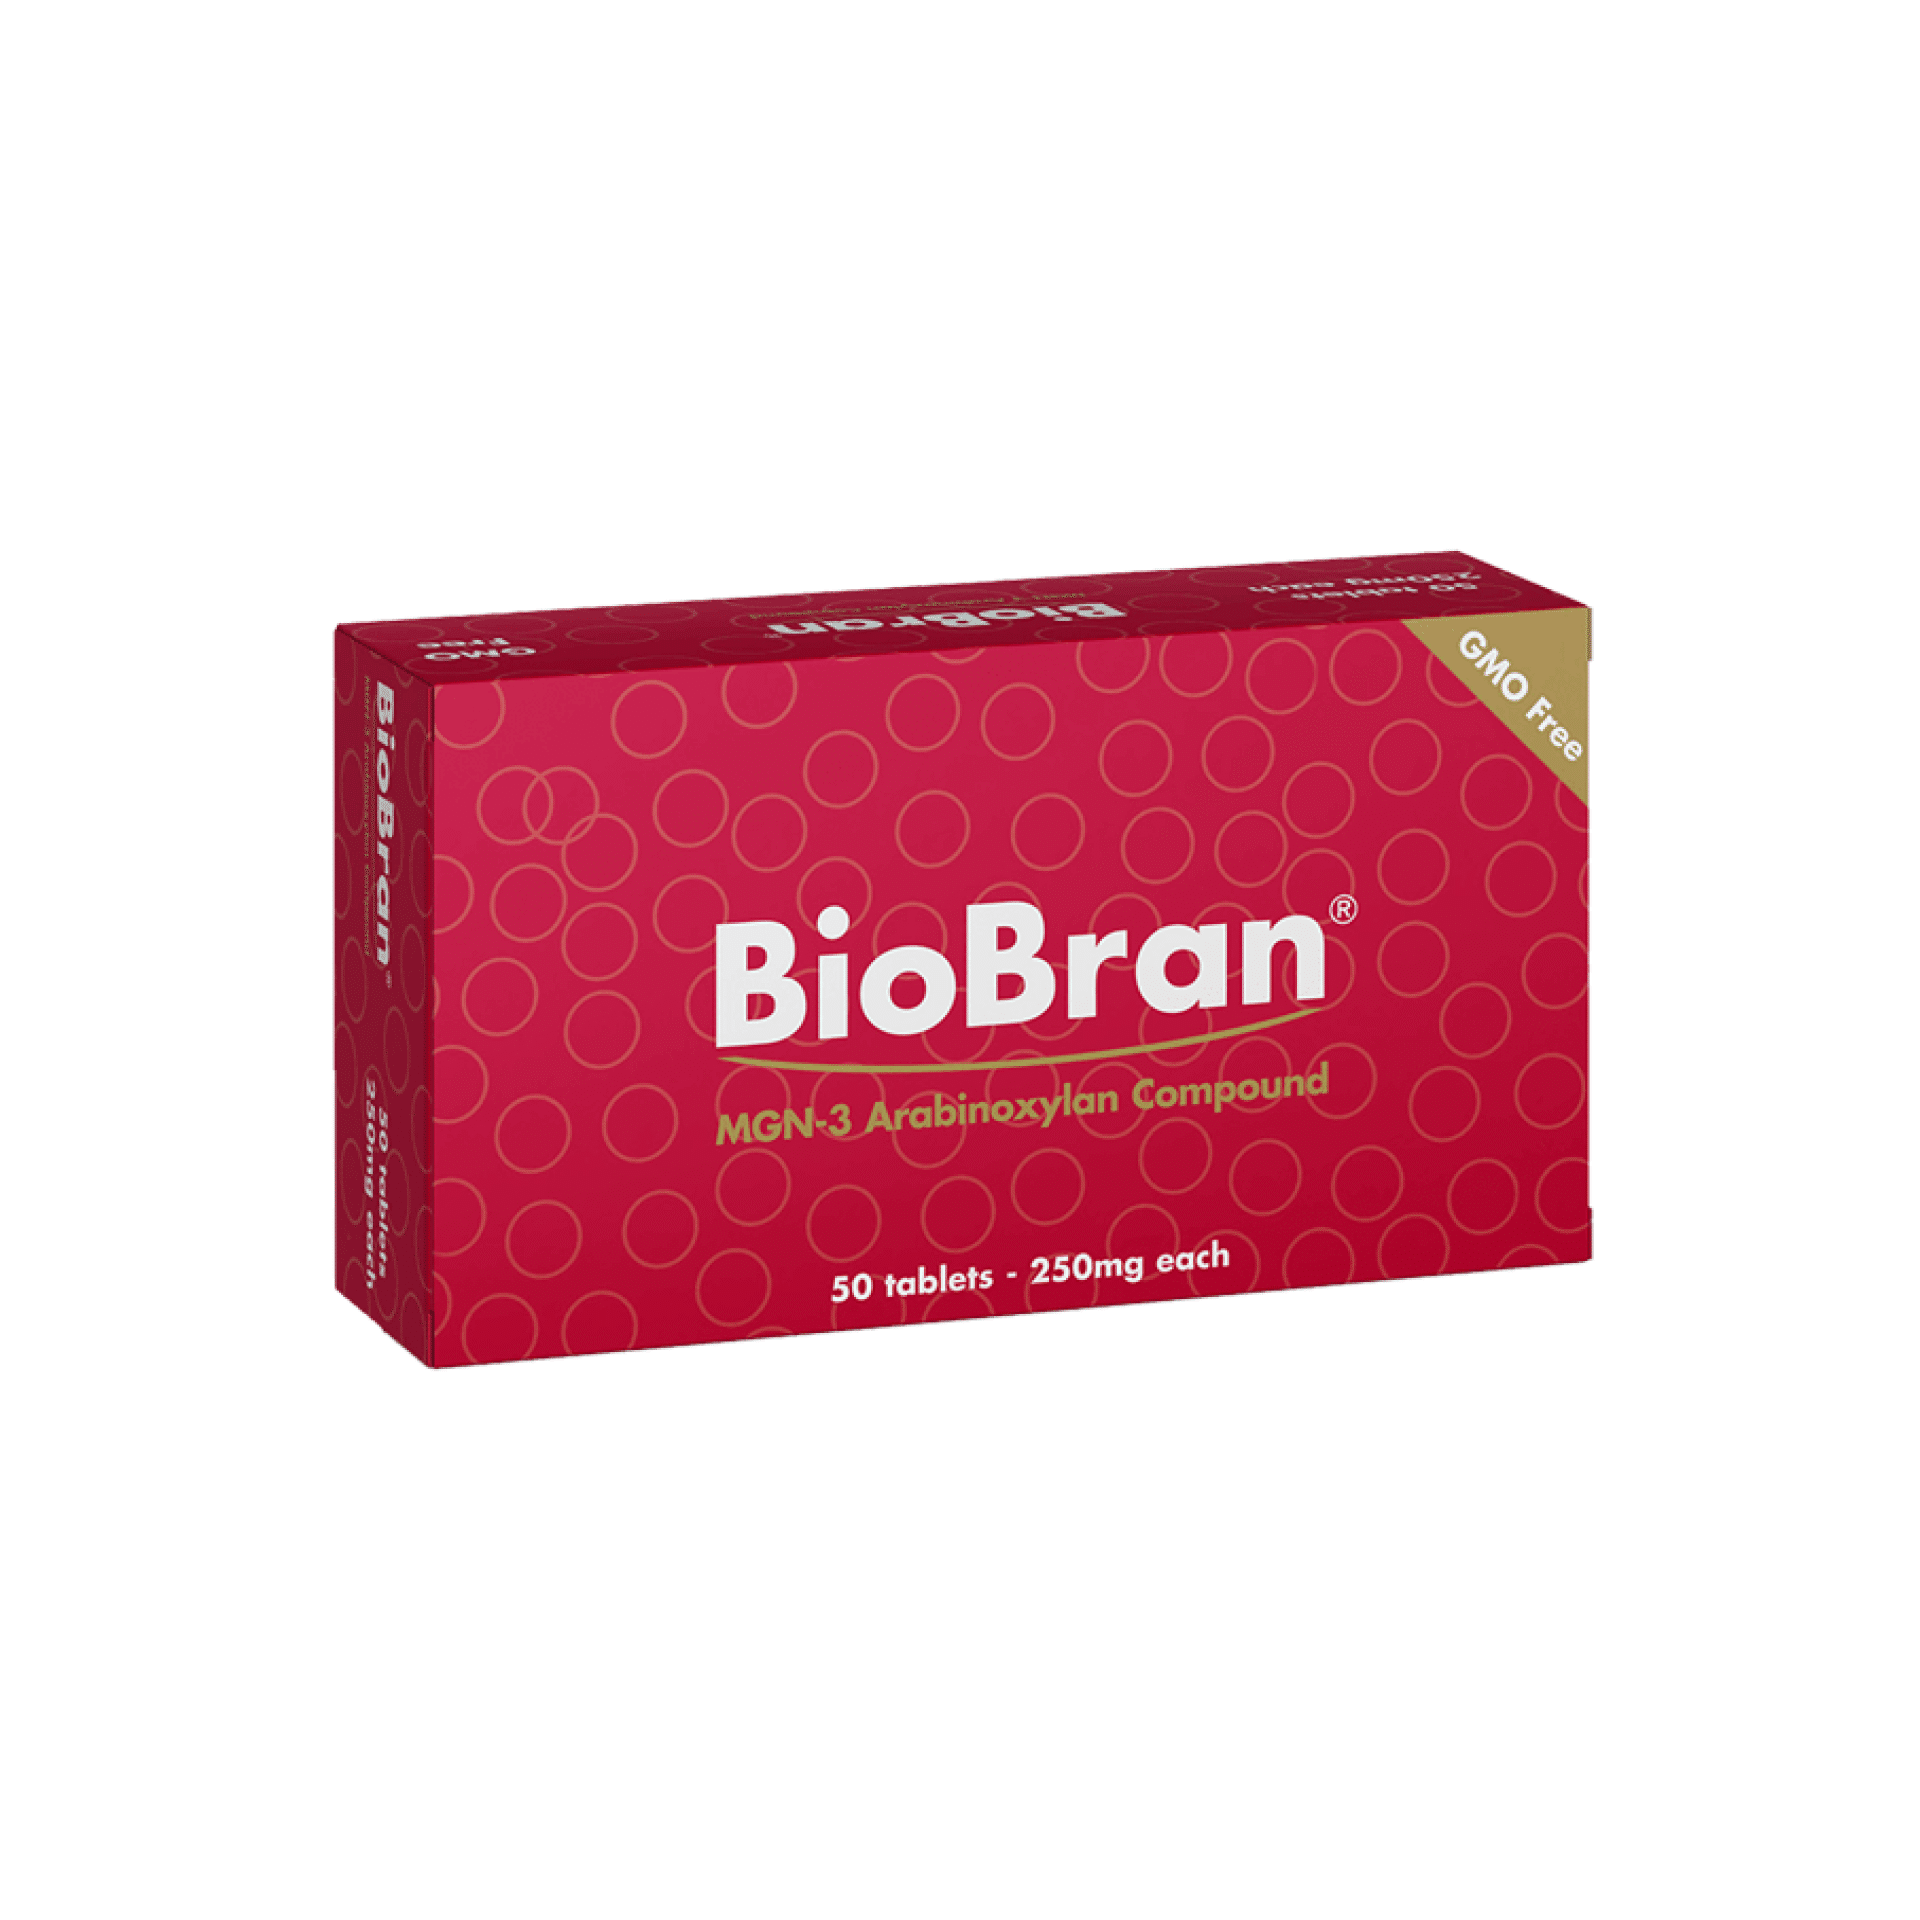 Verpakking Biobran tabletten